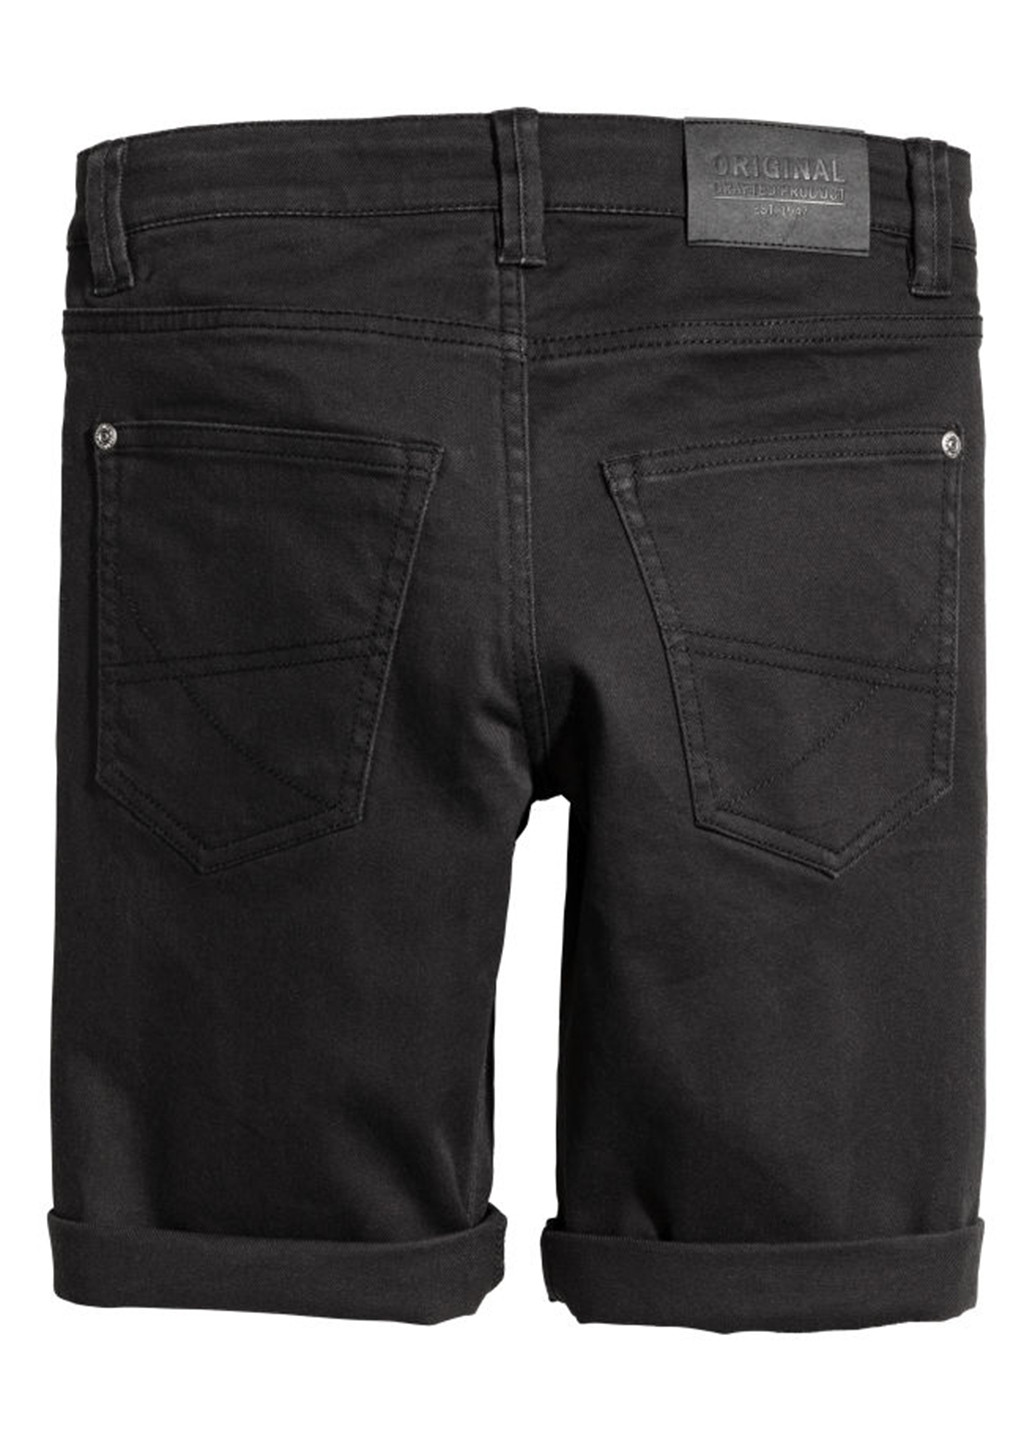 Шорты H&M однотонные чёрные джинсовые хлопок